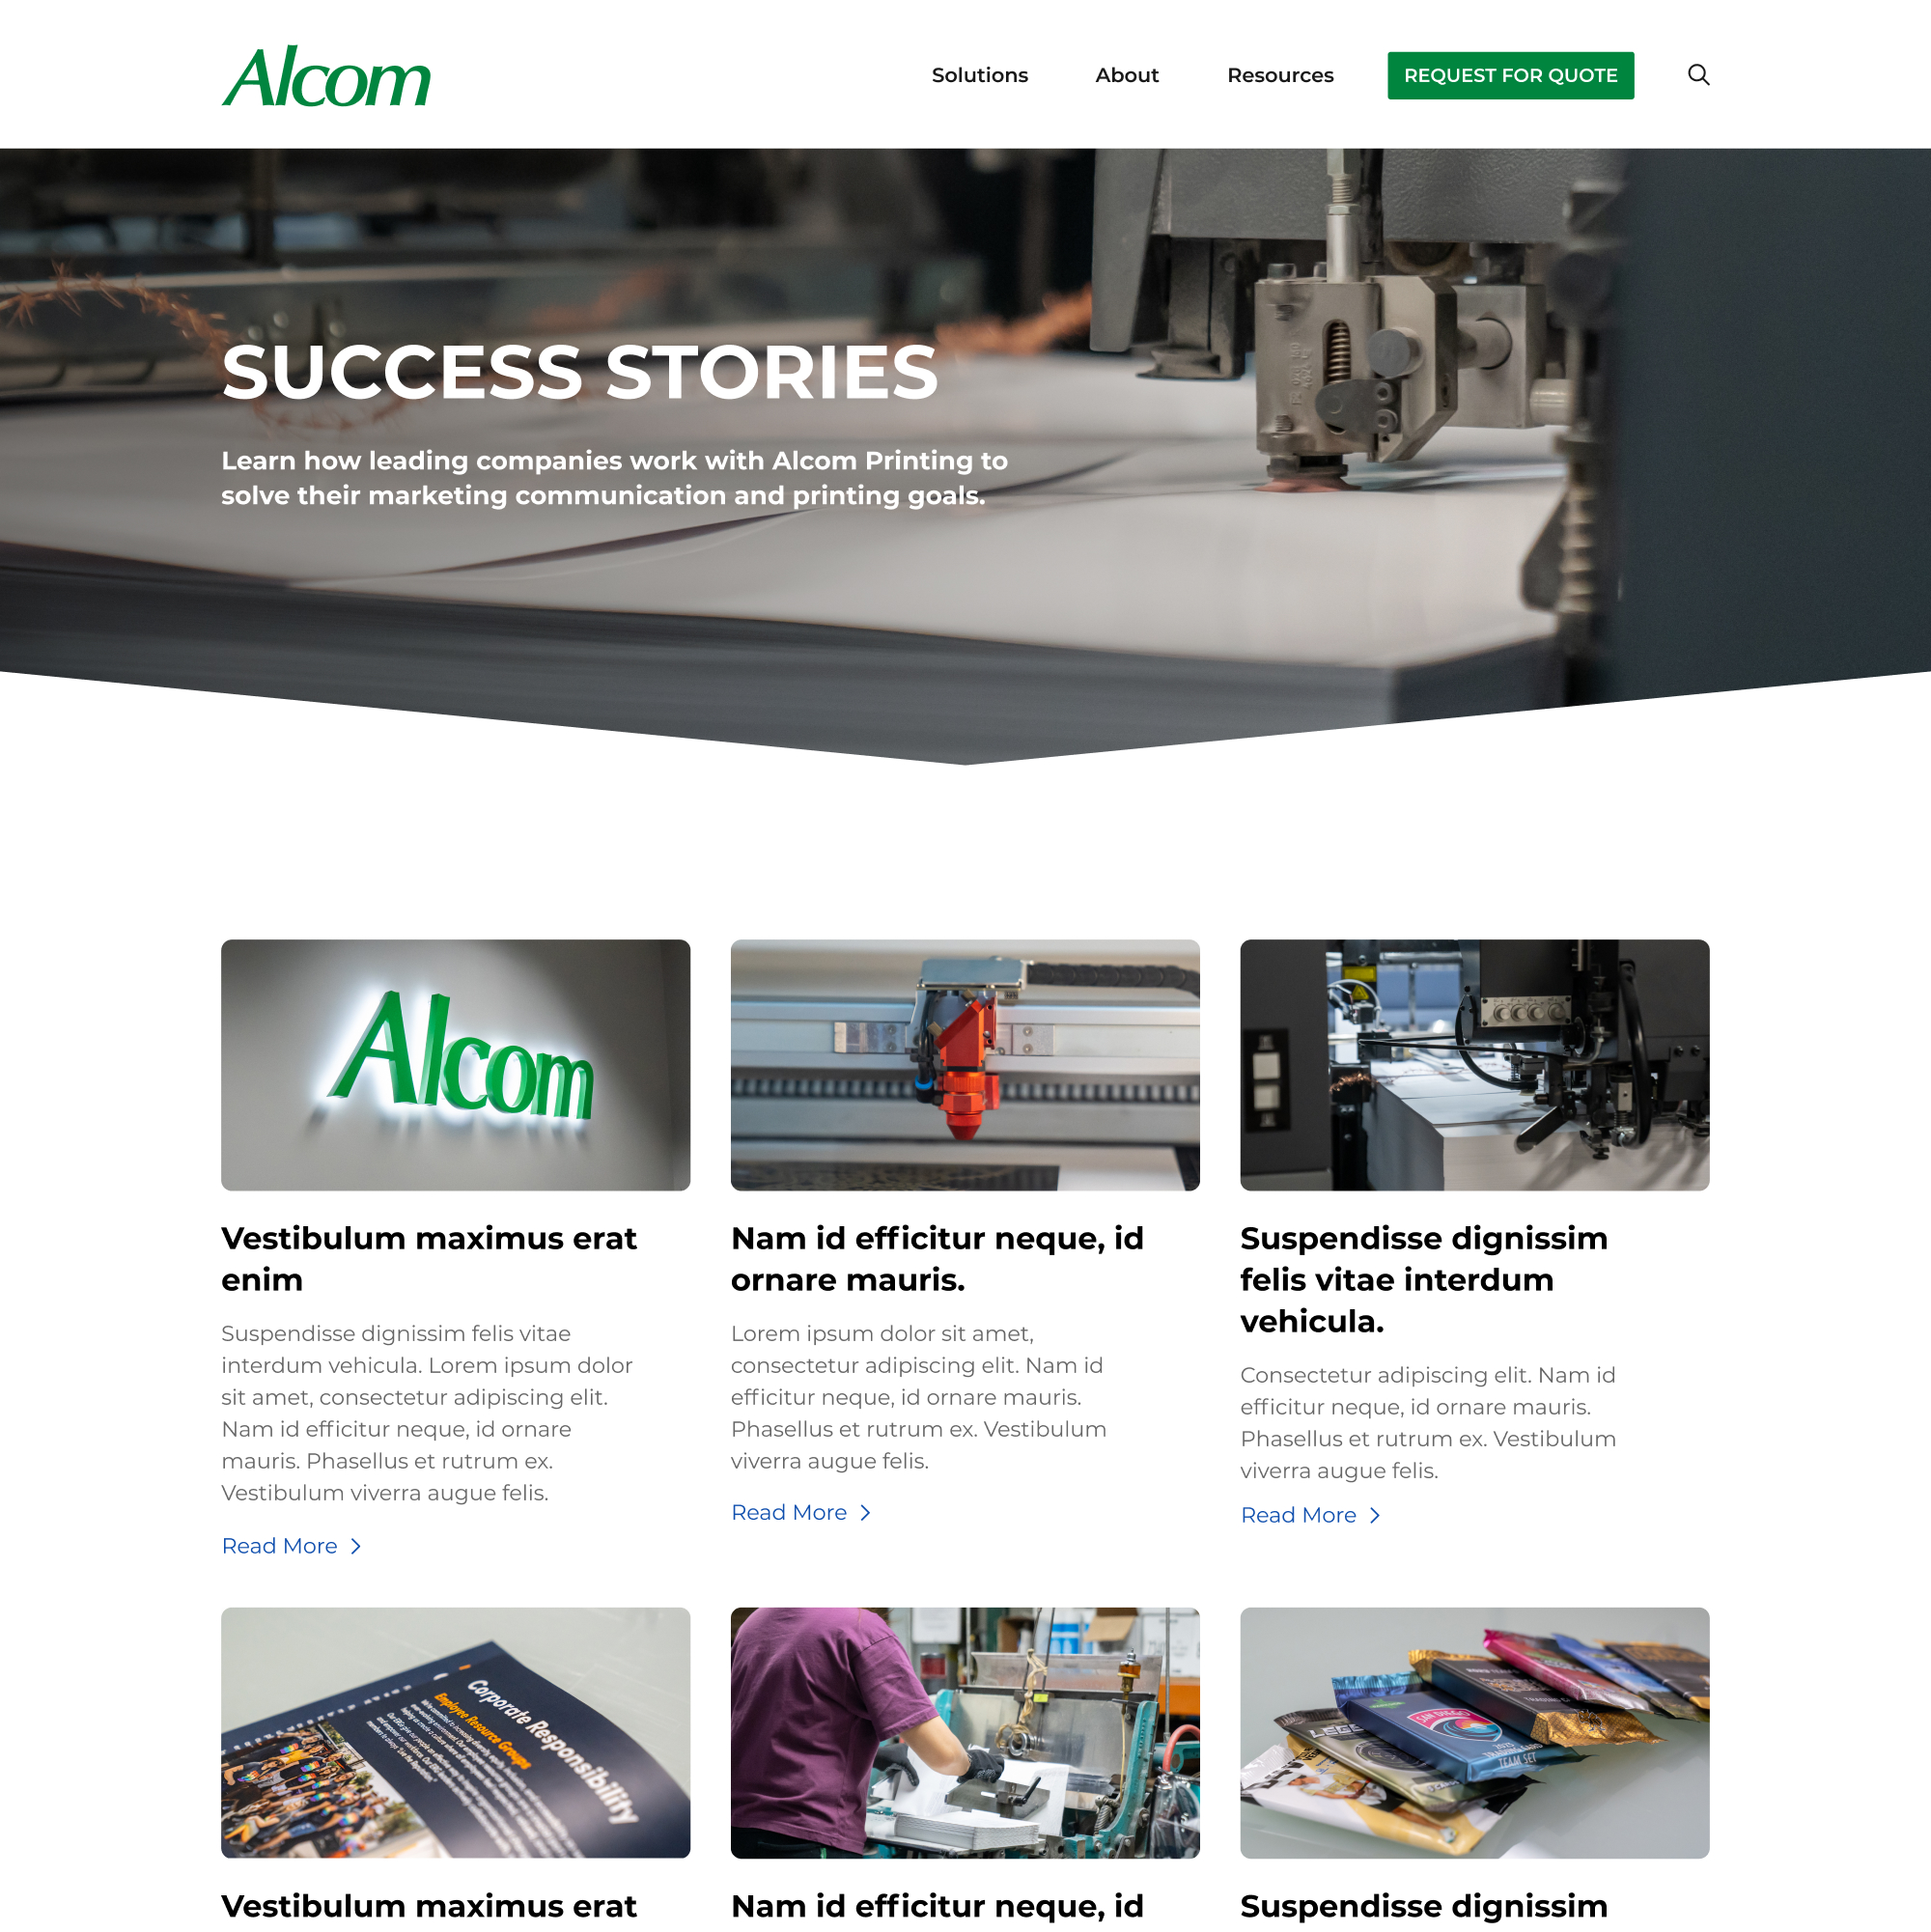 Alcom Printing website designs